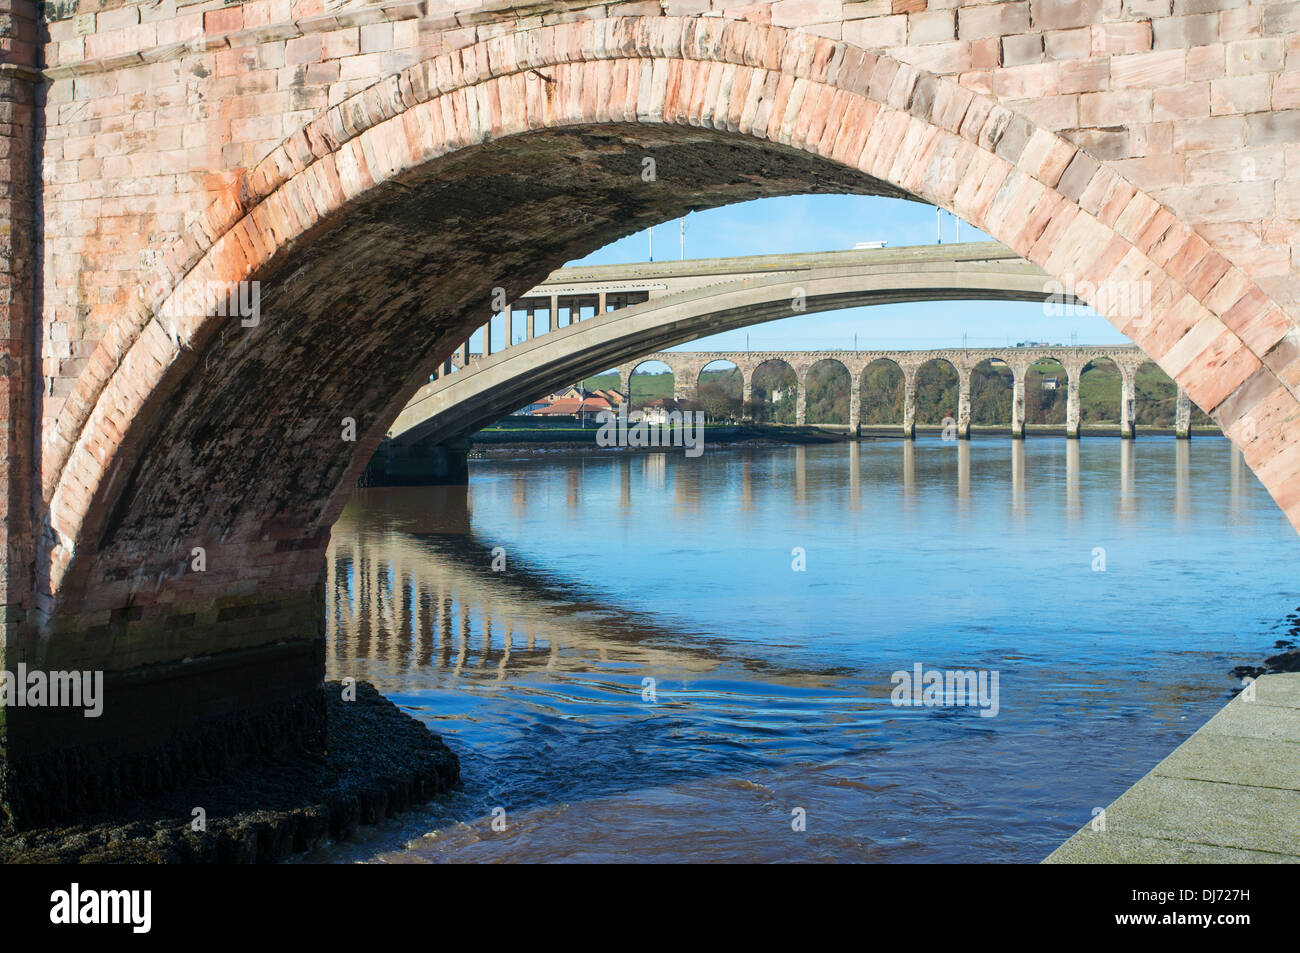 Bridges over the river Tweed, Berwick upon Tweed, Northumberland, England, UK Stock Photo